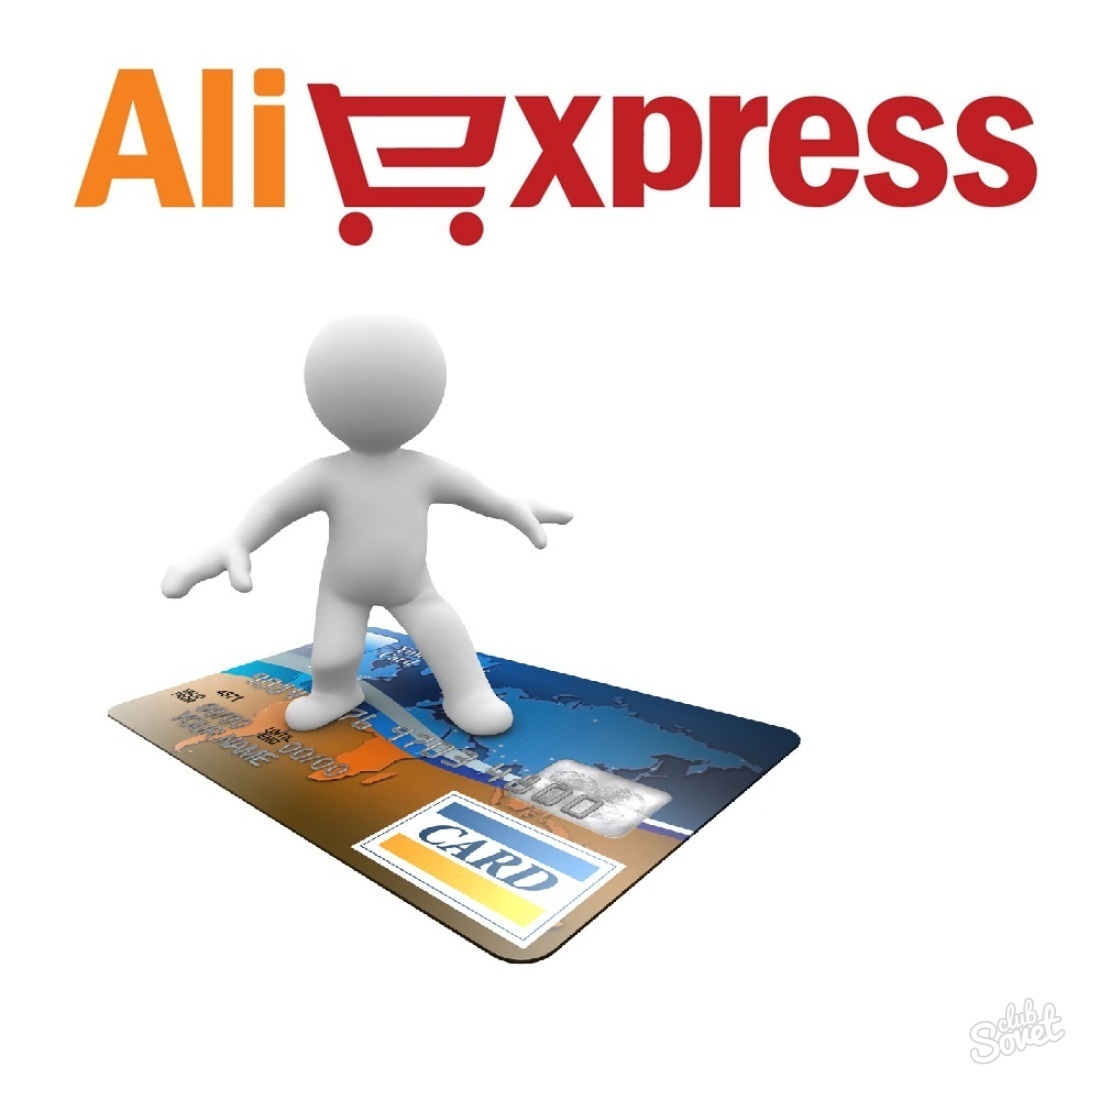 Metody płatności dla Aliexpress